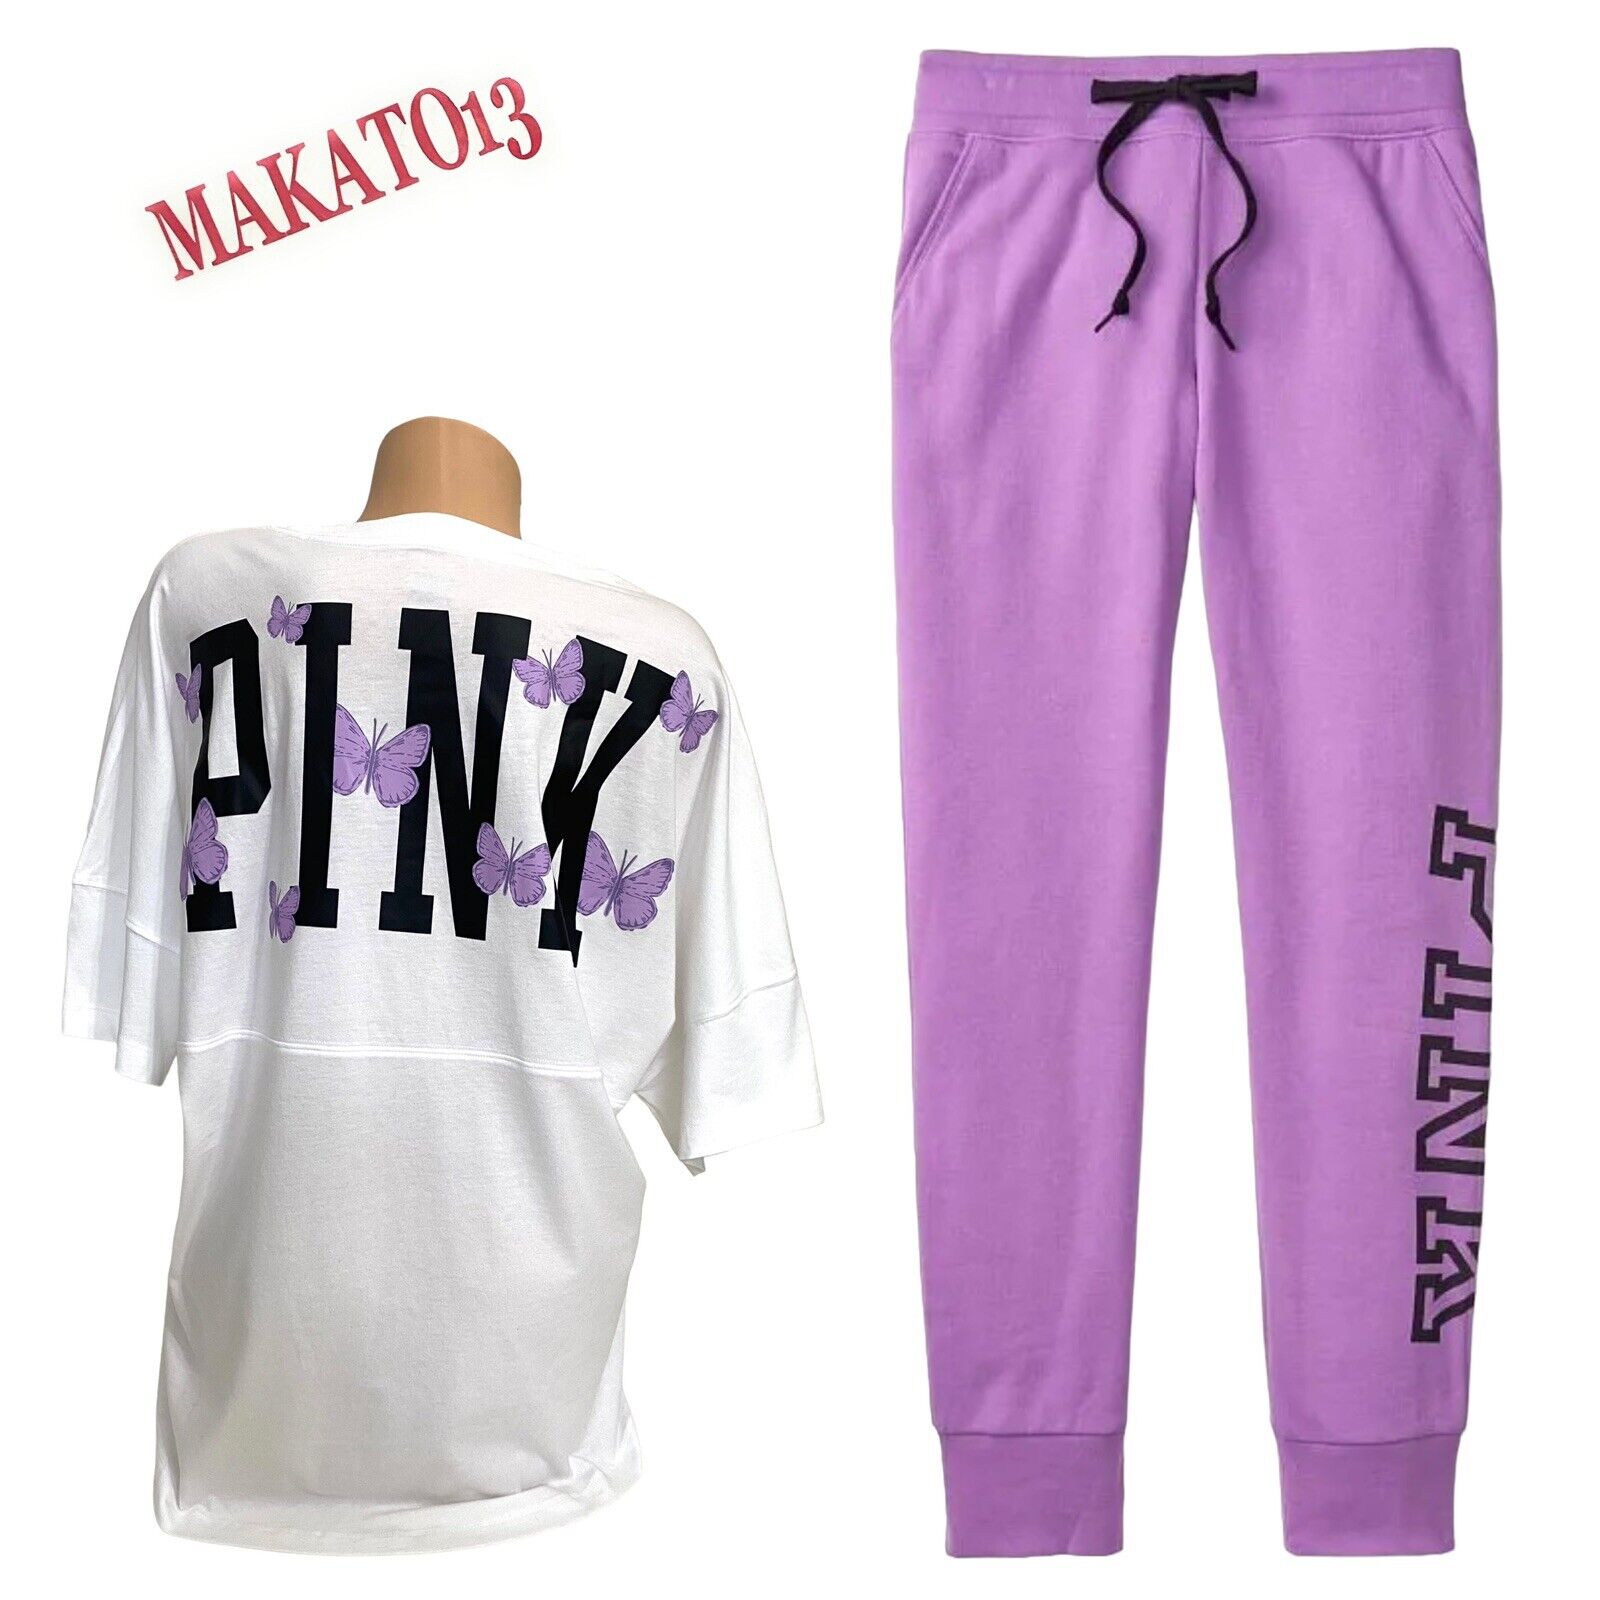 Victorias Secret Pink Large/xl Graphic T-shirt & Fleece Jogger Pants Set New